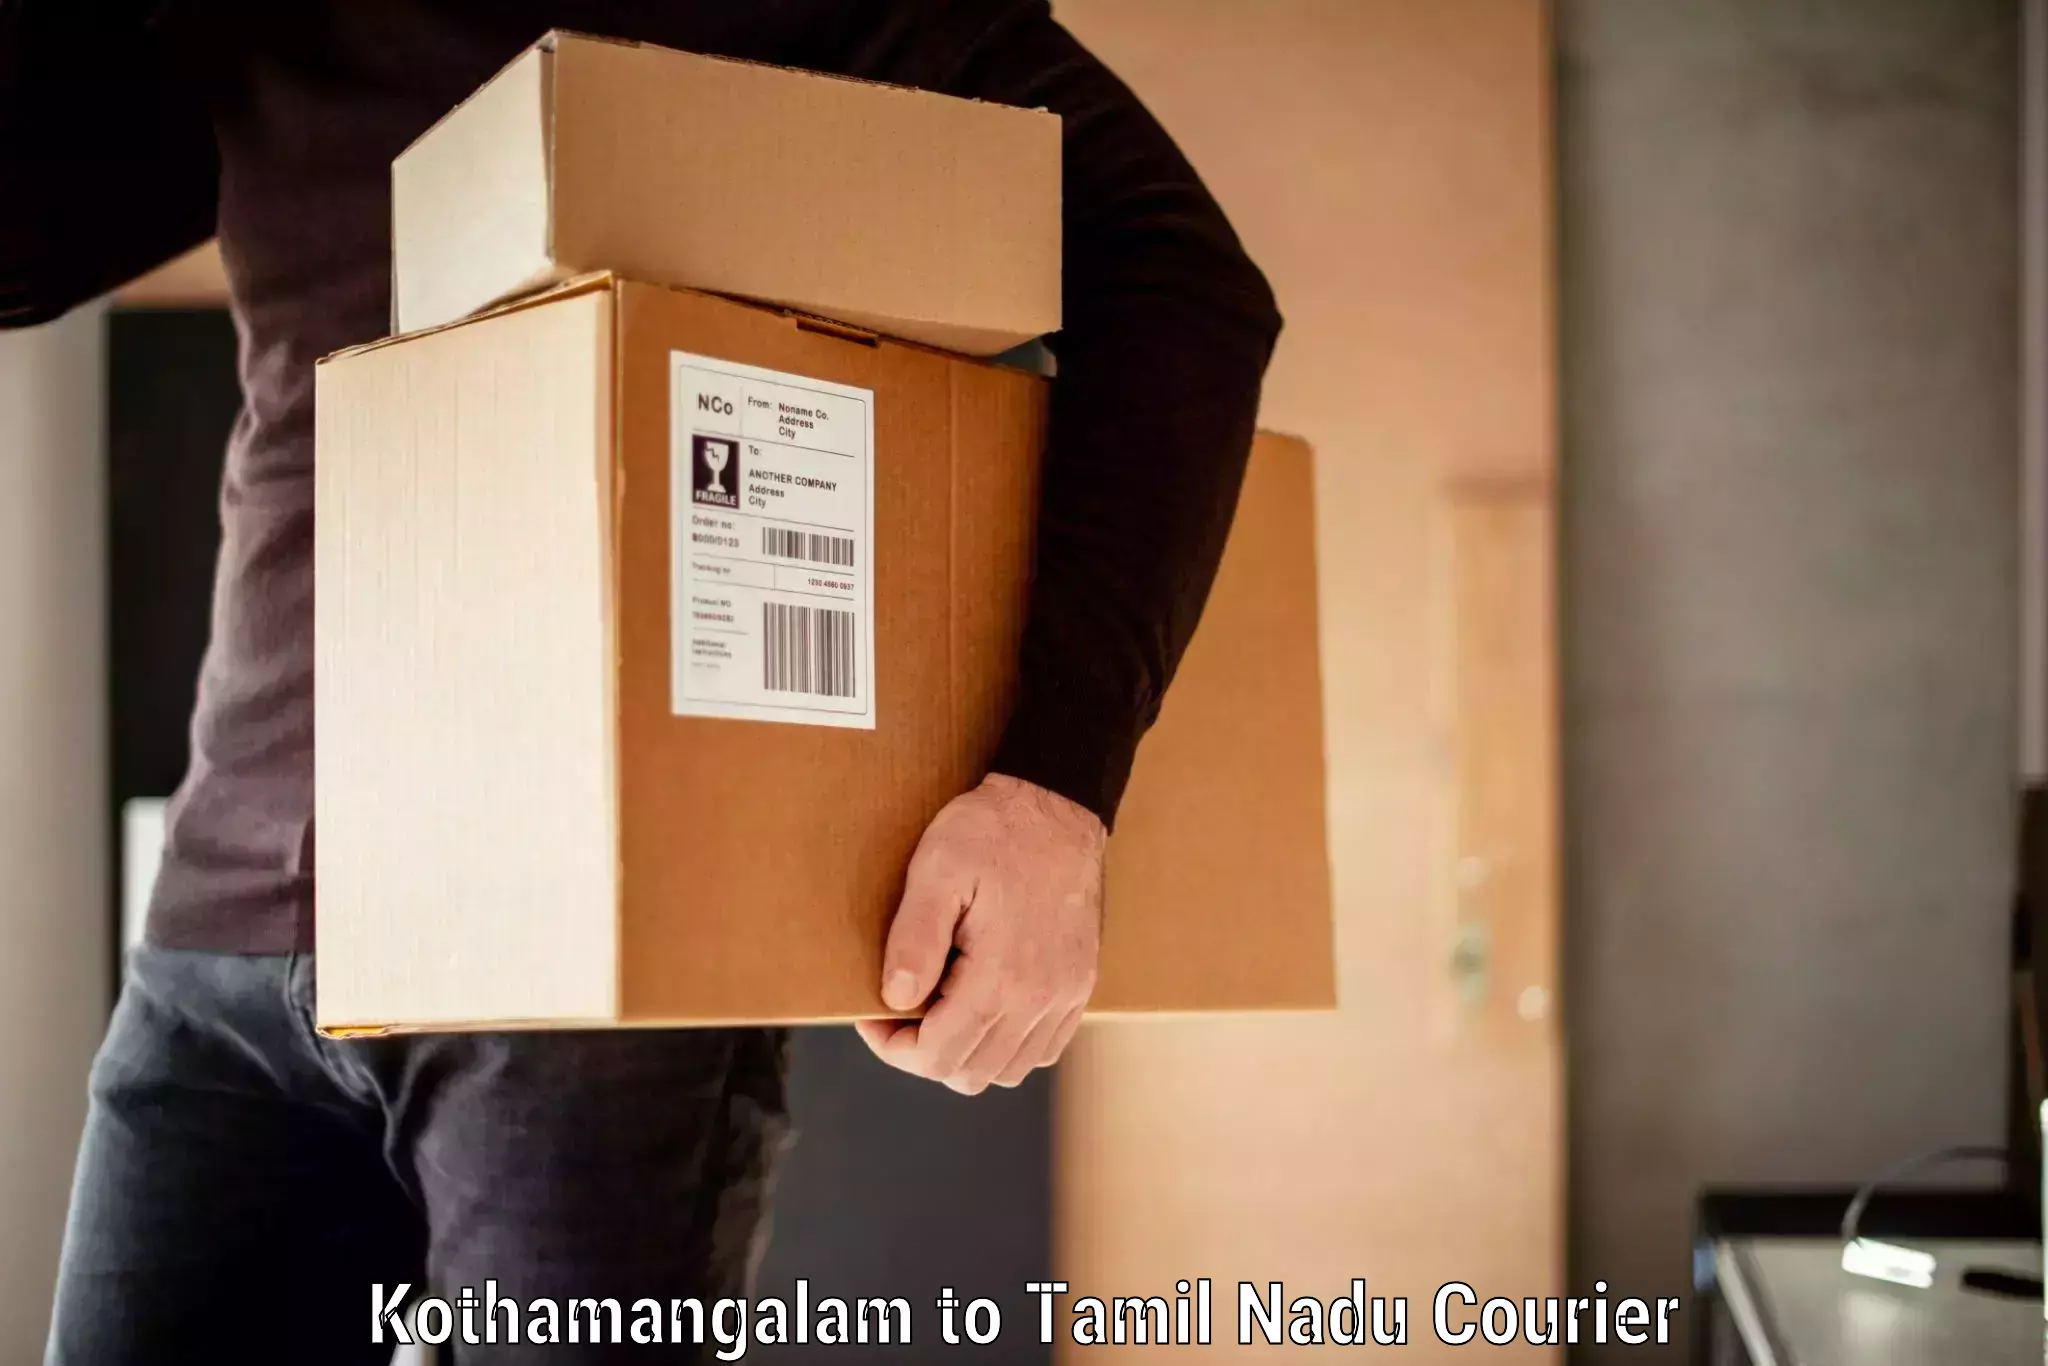 Same day luggage service Kothamangalam to Pennagaram